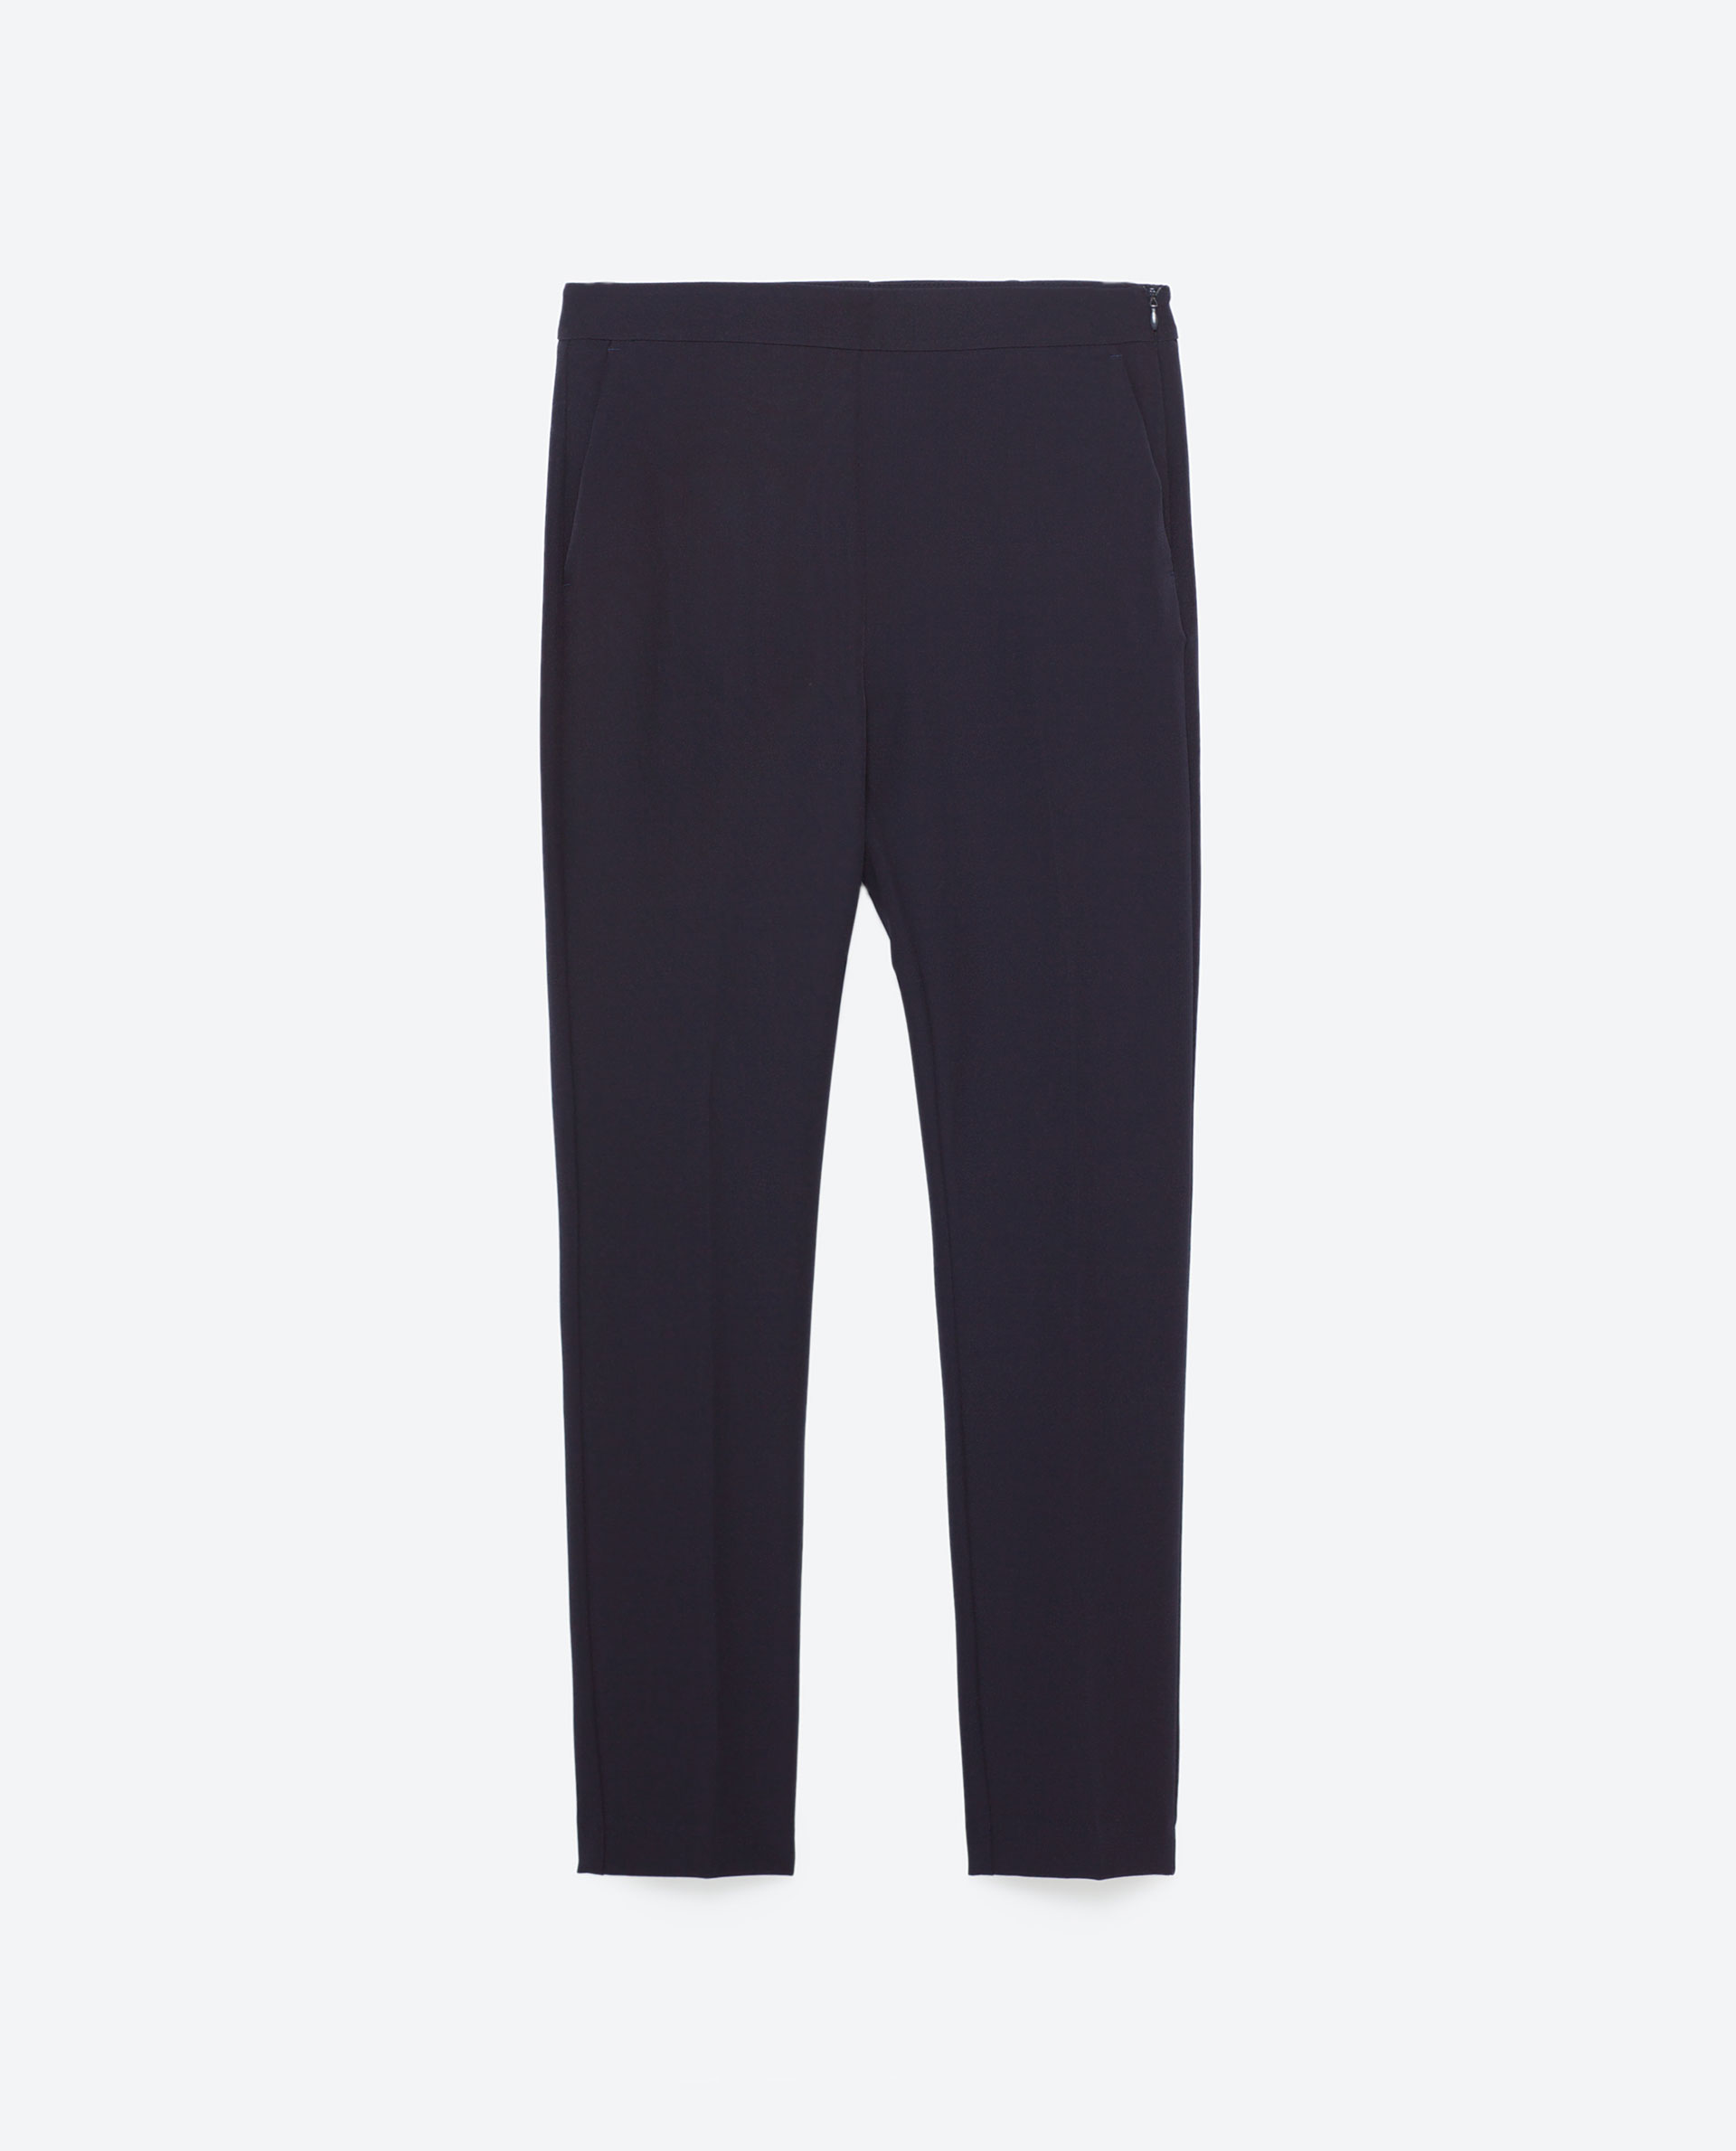 High Waist Navy Trousers at Zara £22.99